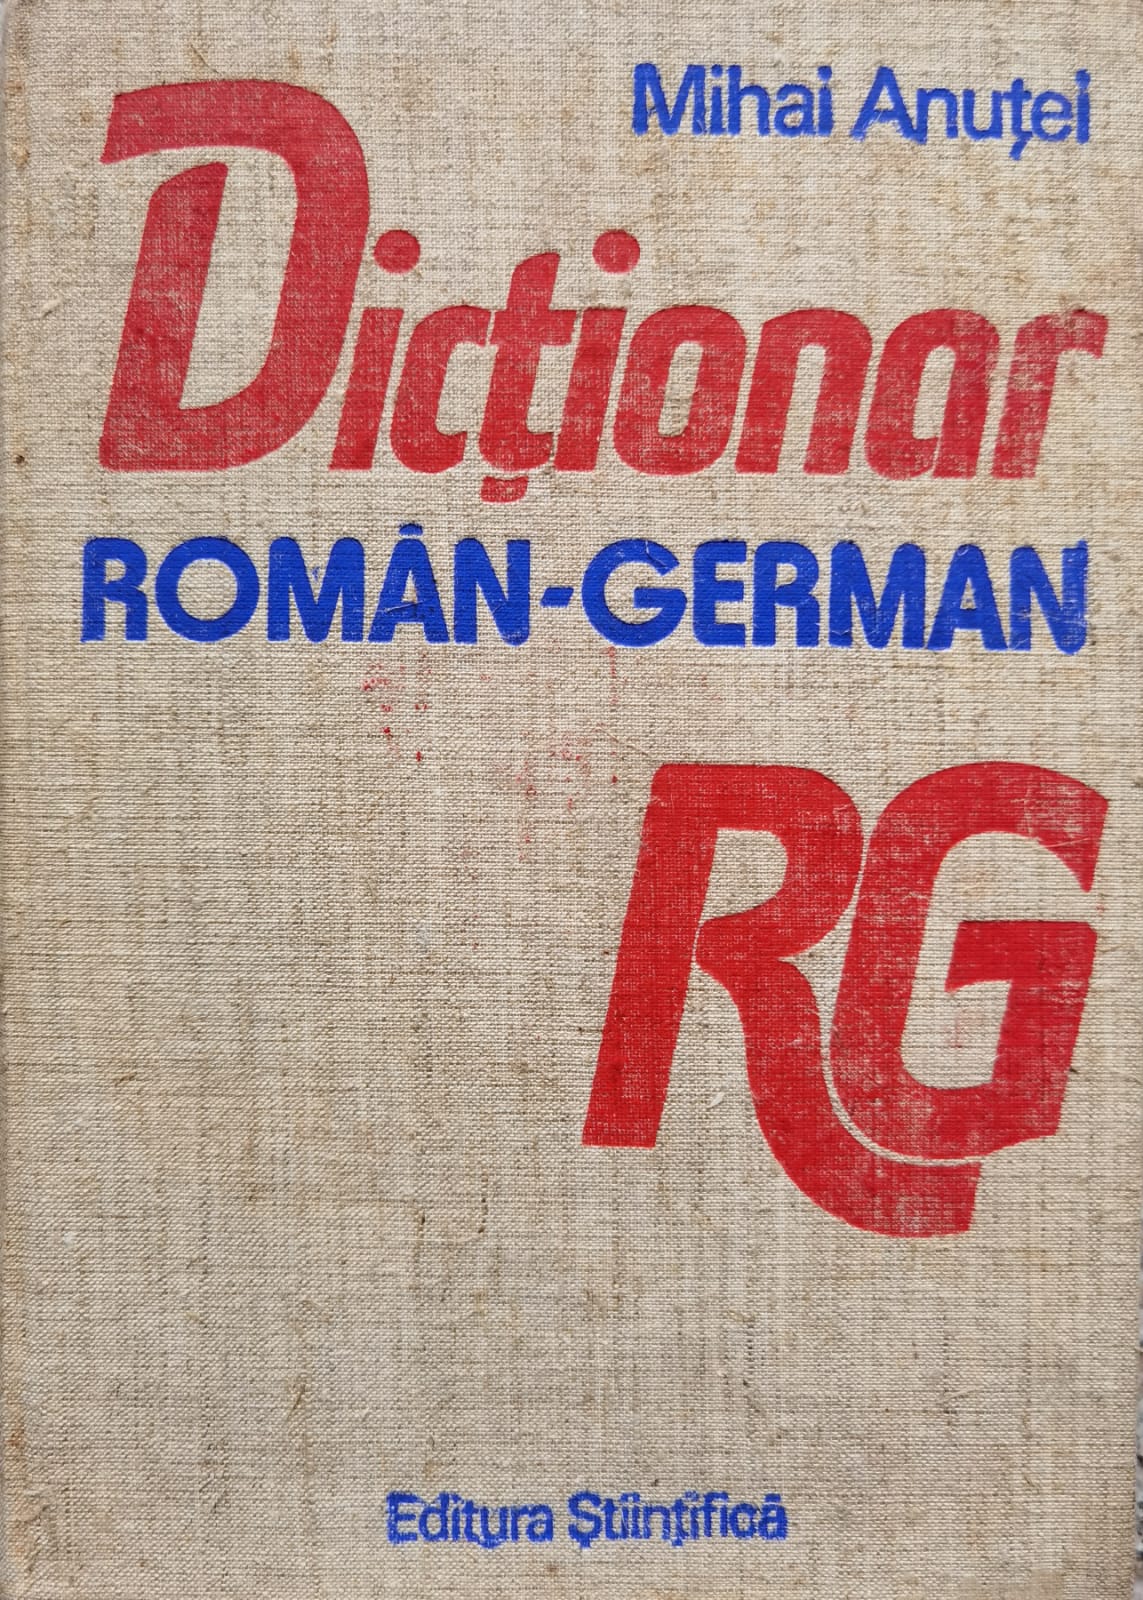 dictionar roman-german                                                                               mihai anutei                                                                                        